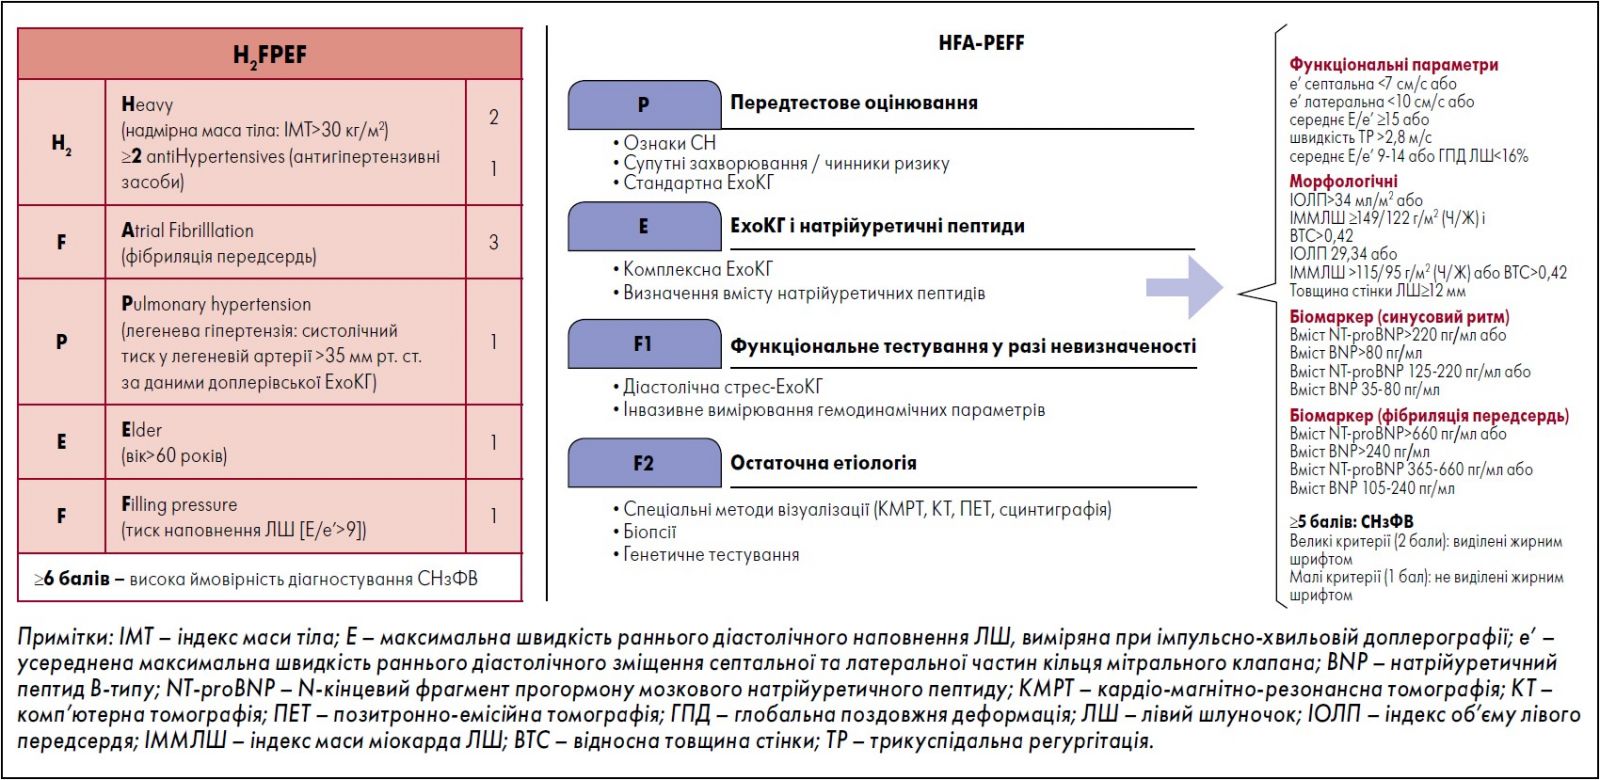 Рис. 4. Алгоритми оцінювання пацієнтів із підозрою на СНзФВ за шкалами H2FPEF (А) і HFA-PEFF (Б)